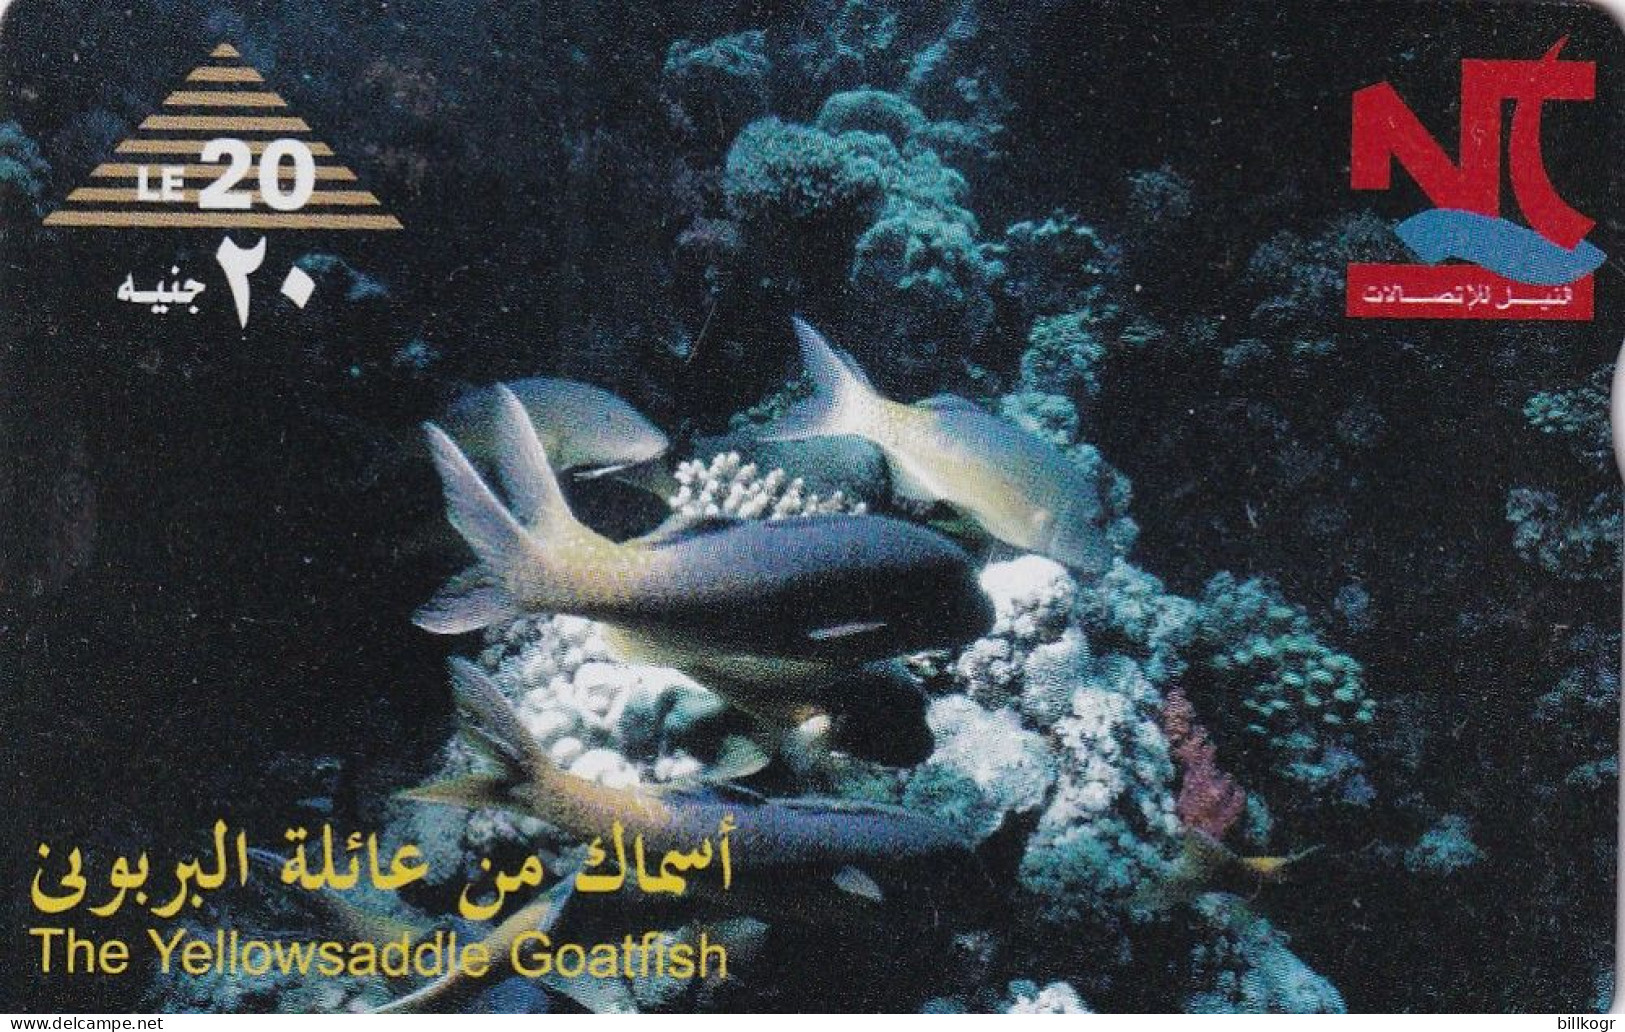 EGYPT(L&G) - Saddle Goatfish, CN : 804L, Tirage 84000, Used - Egypt